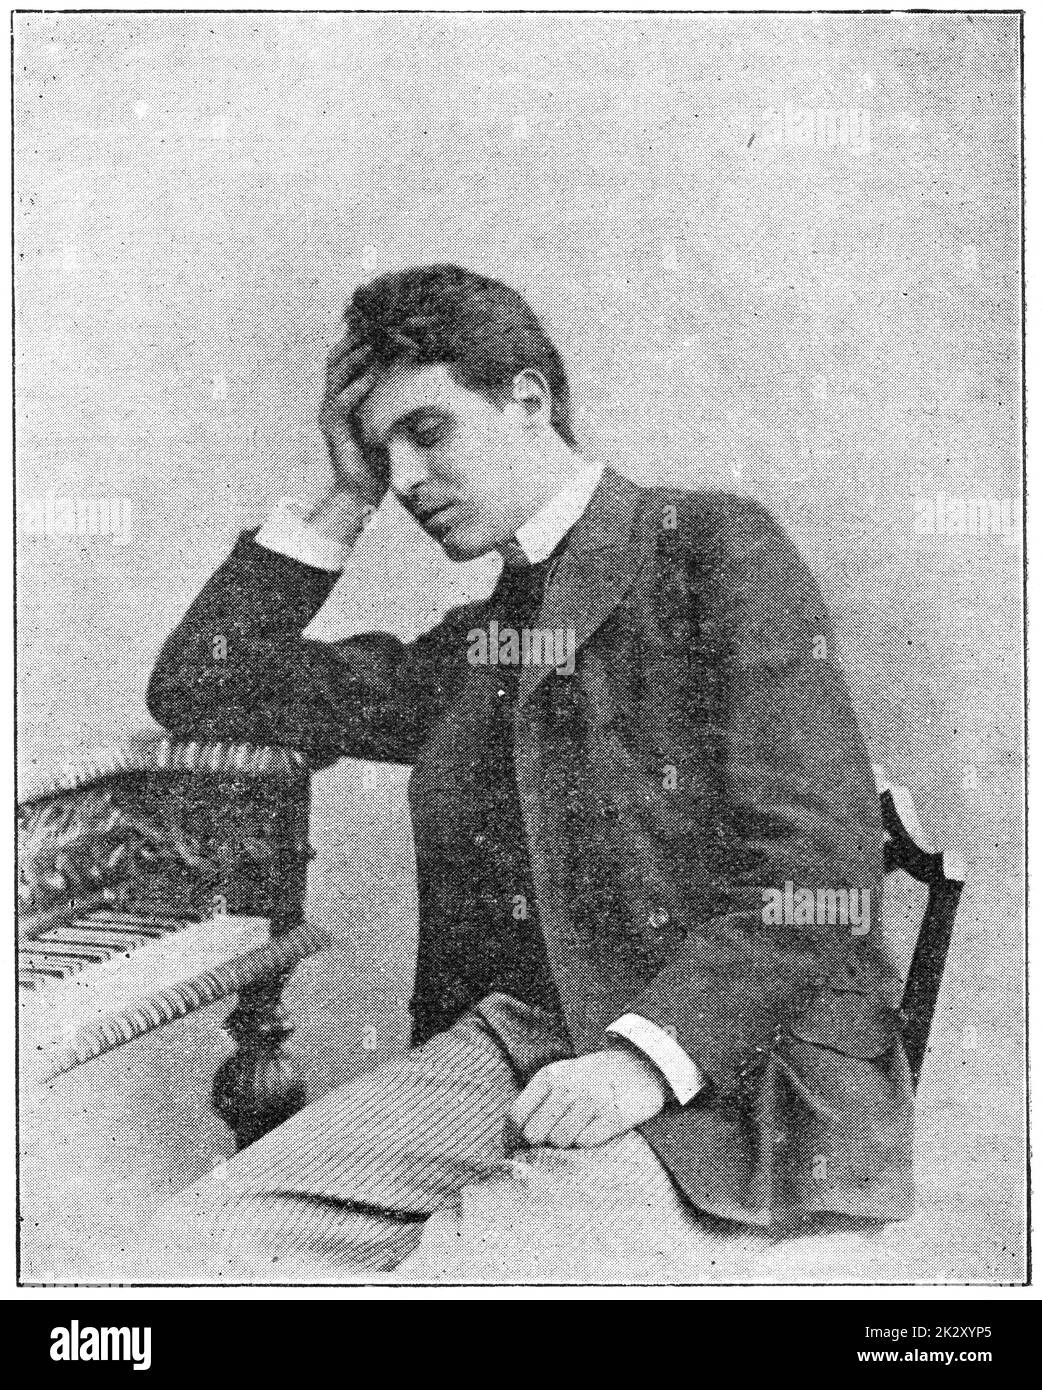 Portrait de Pietro Mascagni - un compositeur italien principalement connu pour ses opéras. Illustration du 19e siècle. Arrière-plan blanc. Banque D'Images